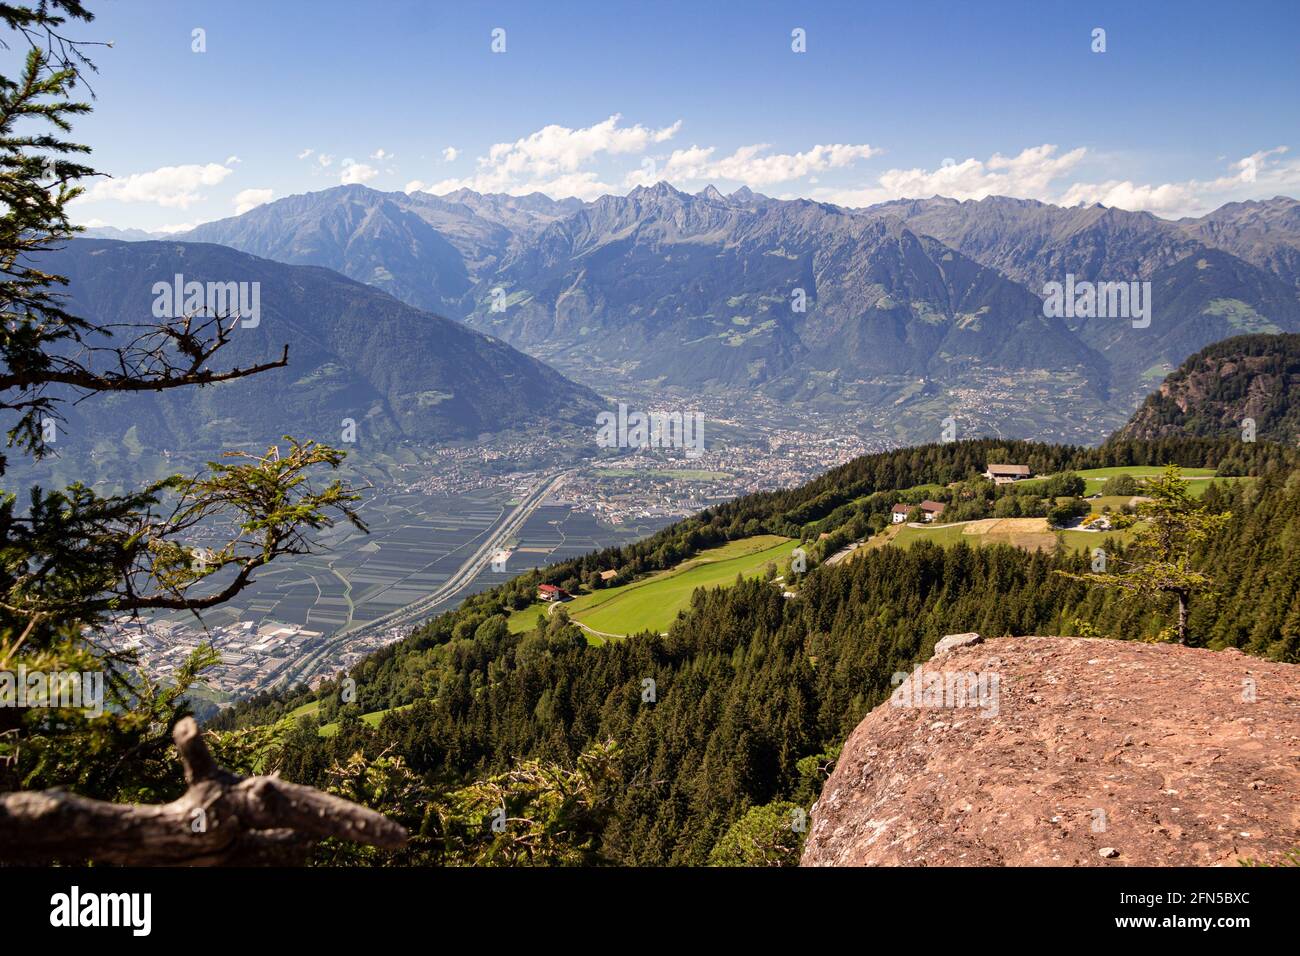 Vista panoramica ad alto angolo sulla città di Merano e la catena montuosa di Texelgruppe vista dall'iconico punto panoramico 'Knottnkino' a Vöran, Alto Adige, Italia Foto Stock